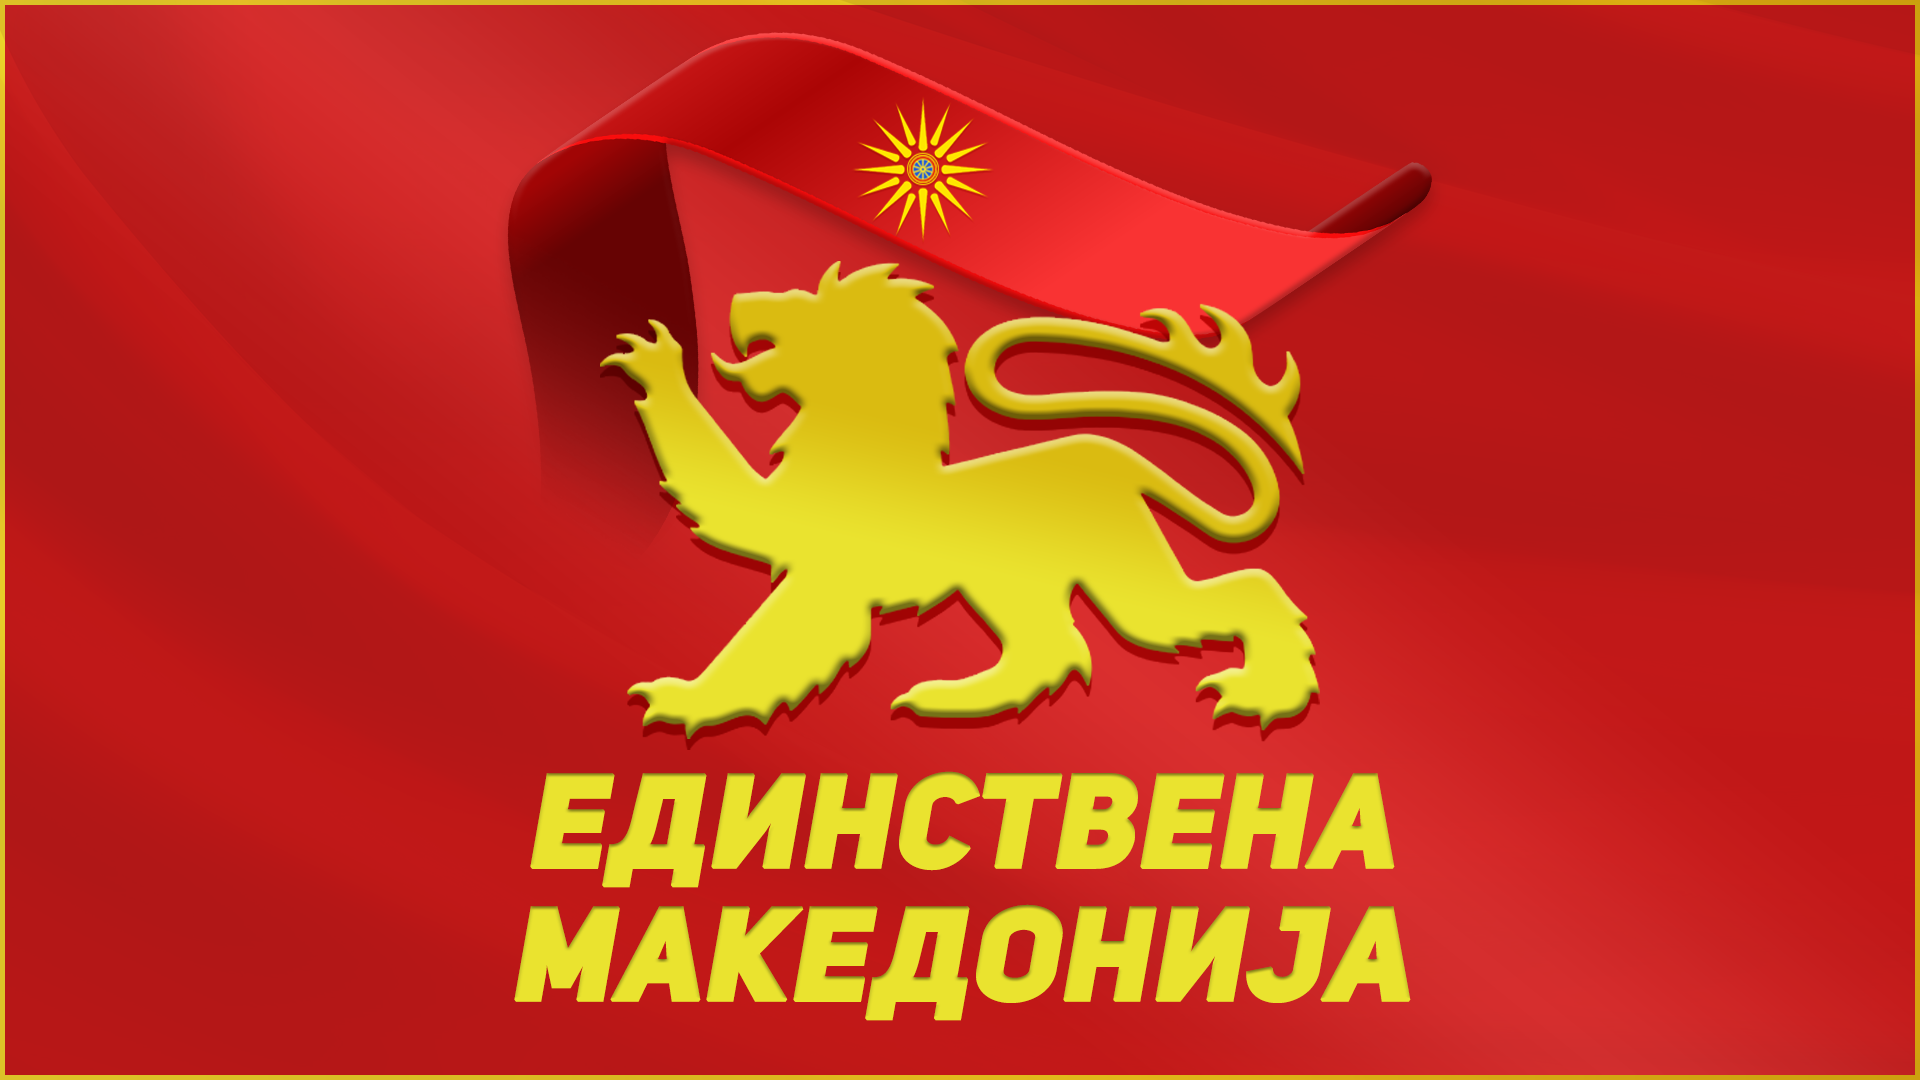 Единствена Македонија до Ковачевски: Европските лидери го поздравија и Договорот во Букурешт 1913, а знаеме како помина Македонија 